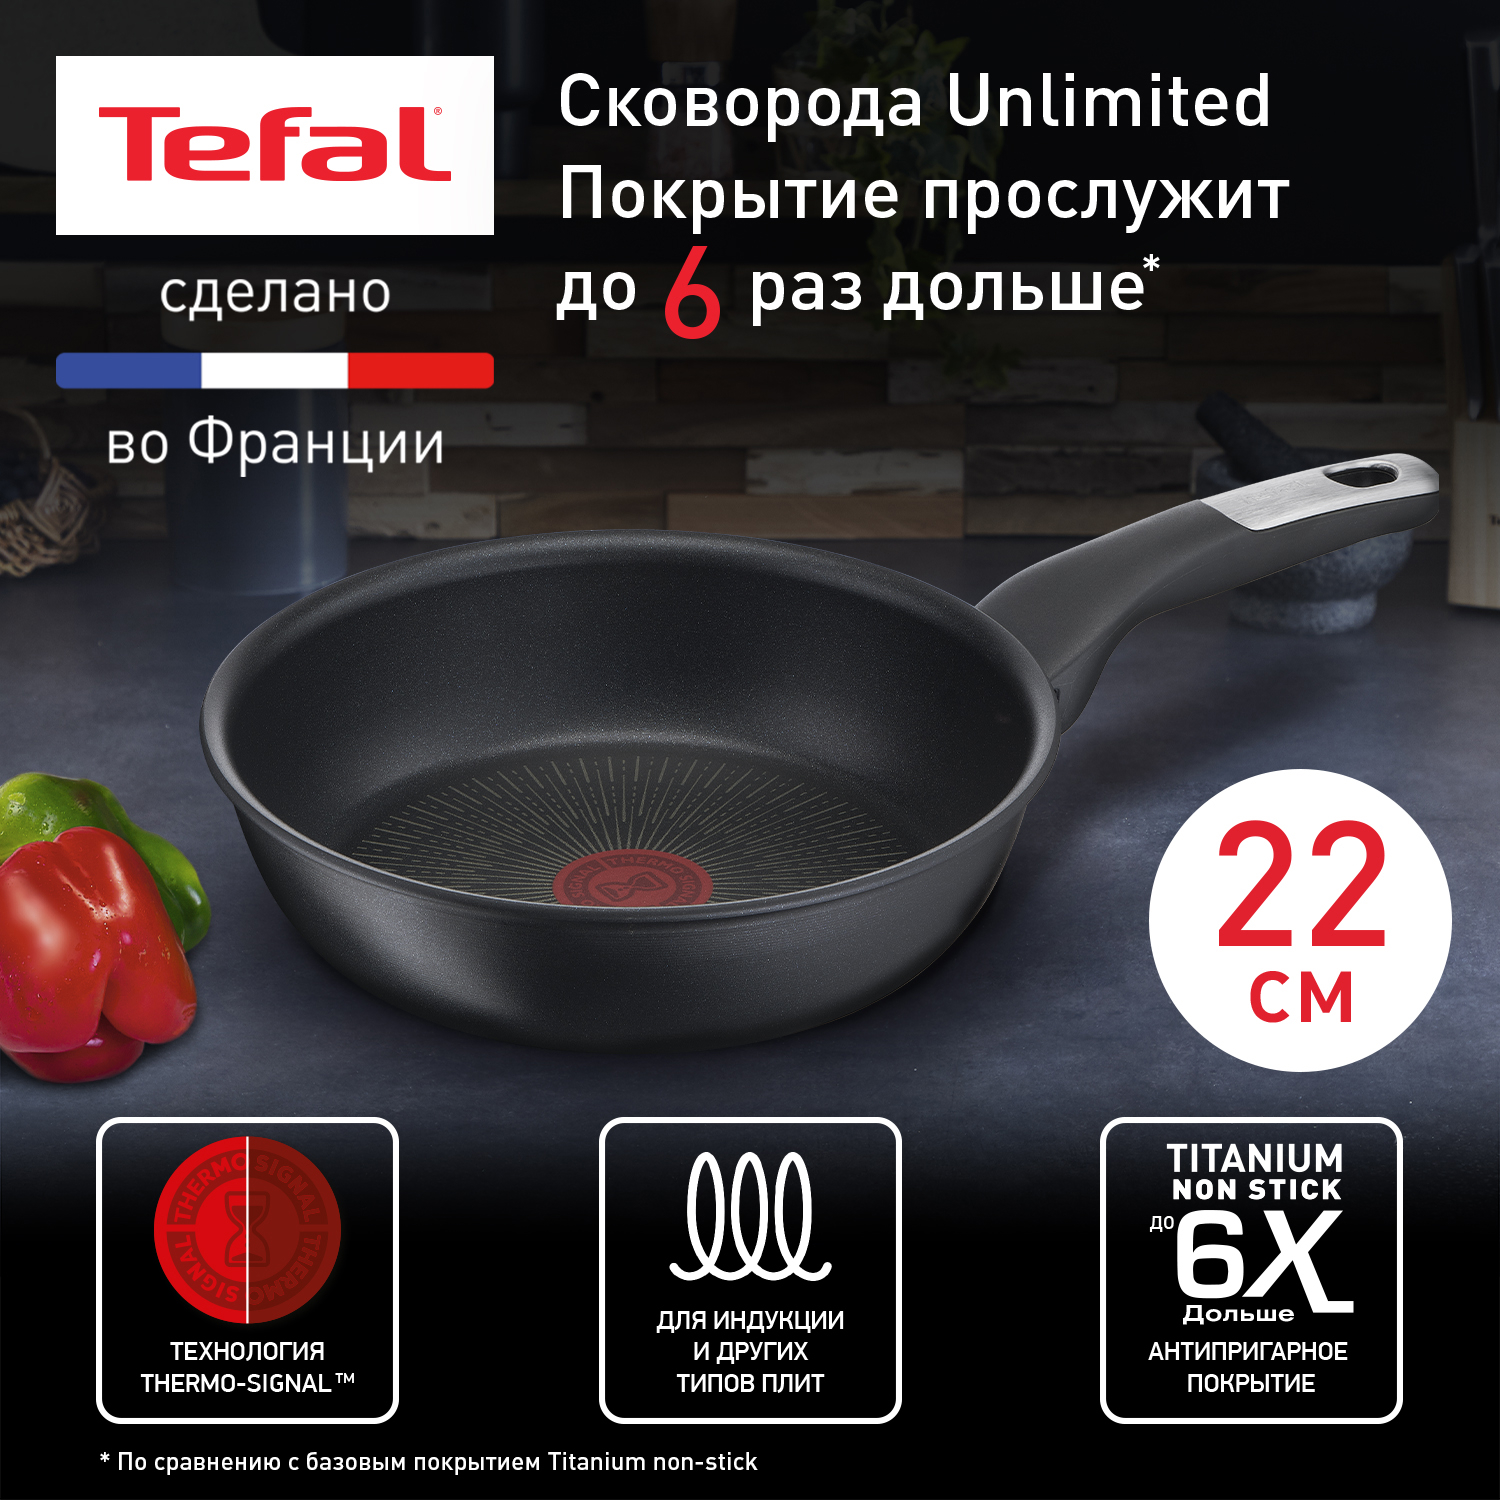 Сковорода универсальная Tefal Unlimited 22 см черный 2100118287